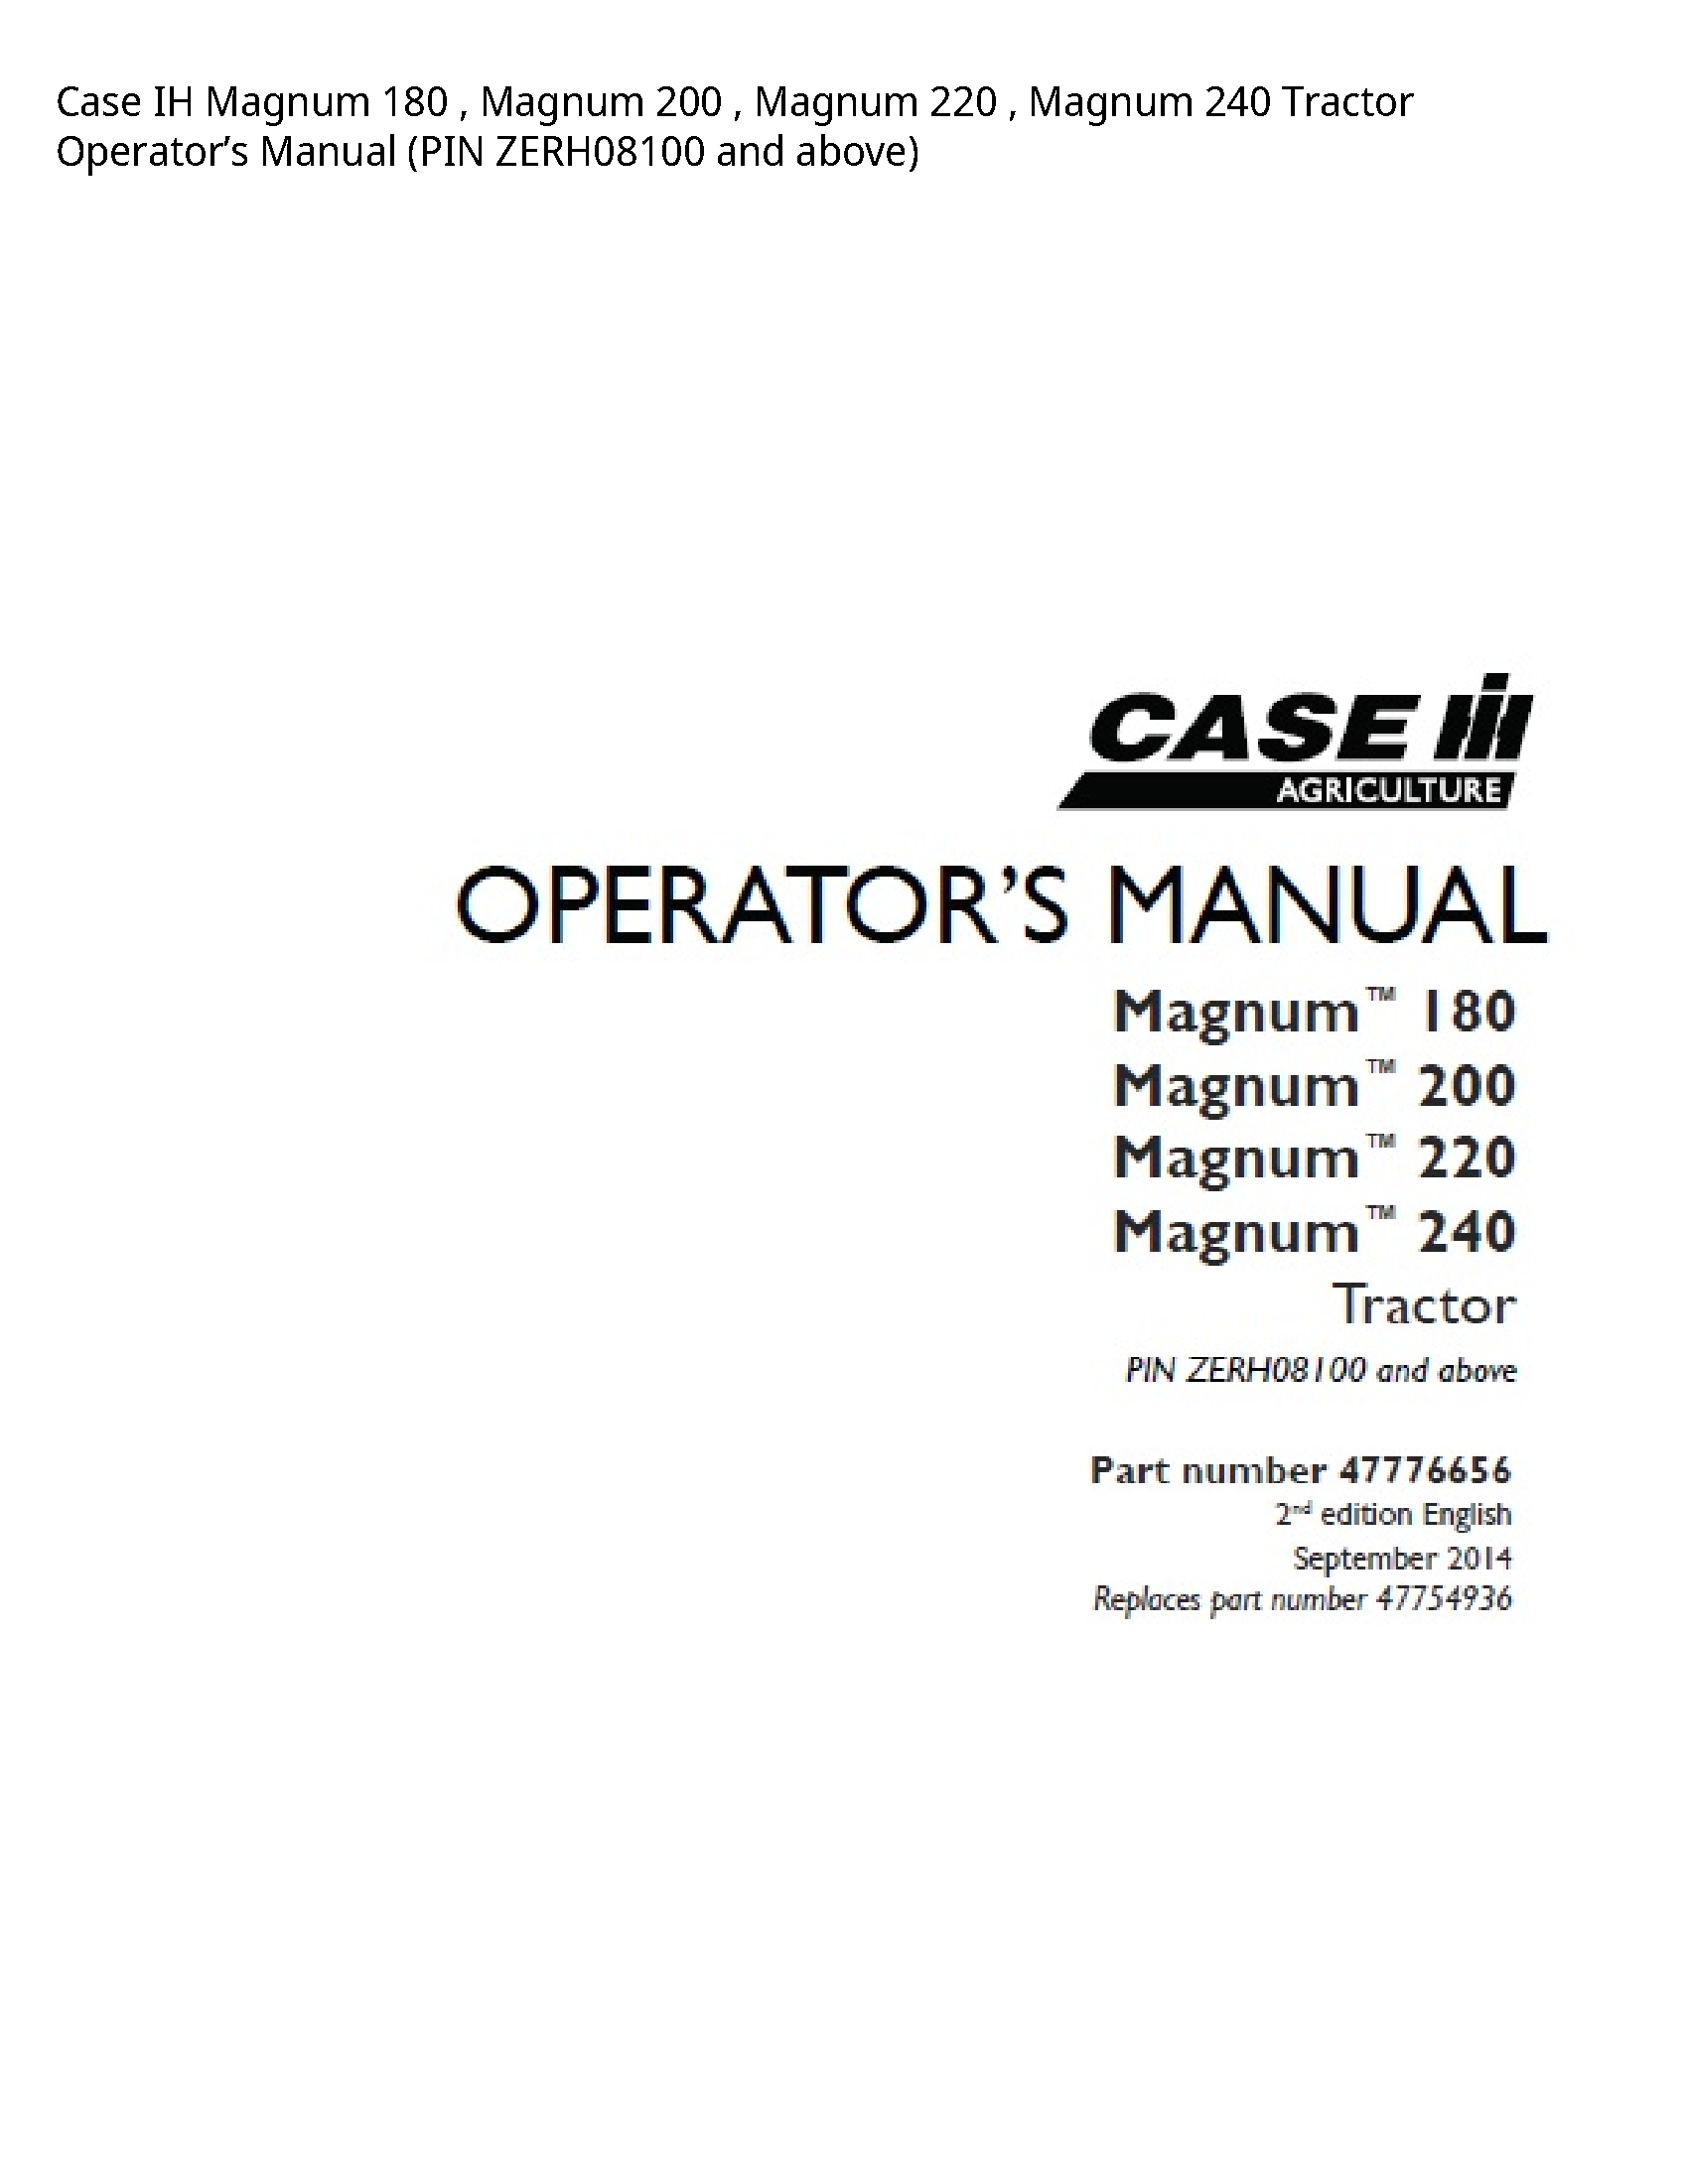 Case/Case IH 180 IH Magnum Magnum Magnum Magnum Tractor Operator’s manual